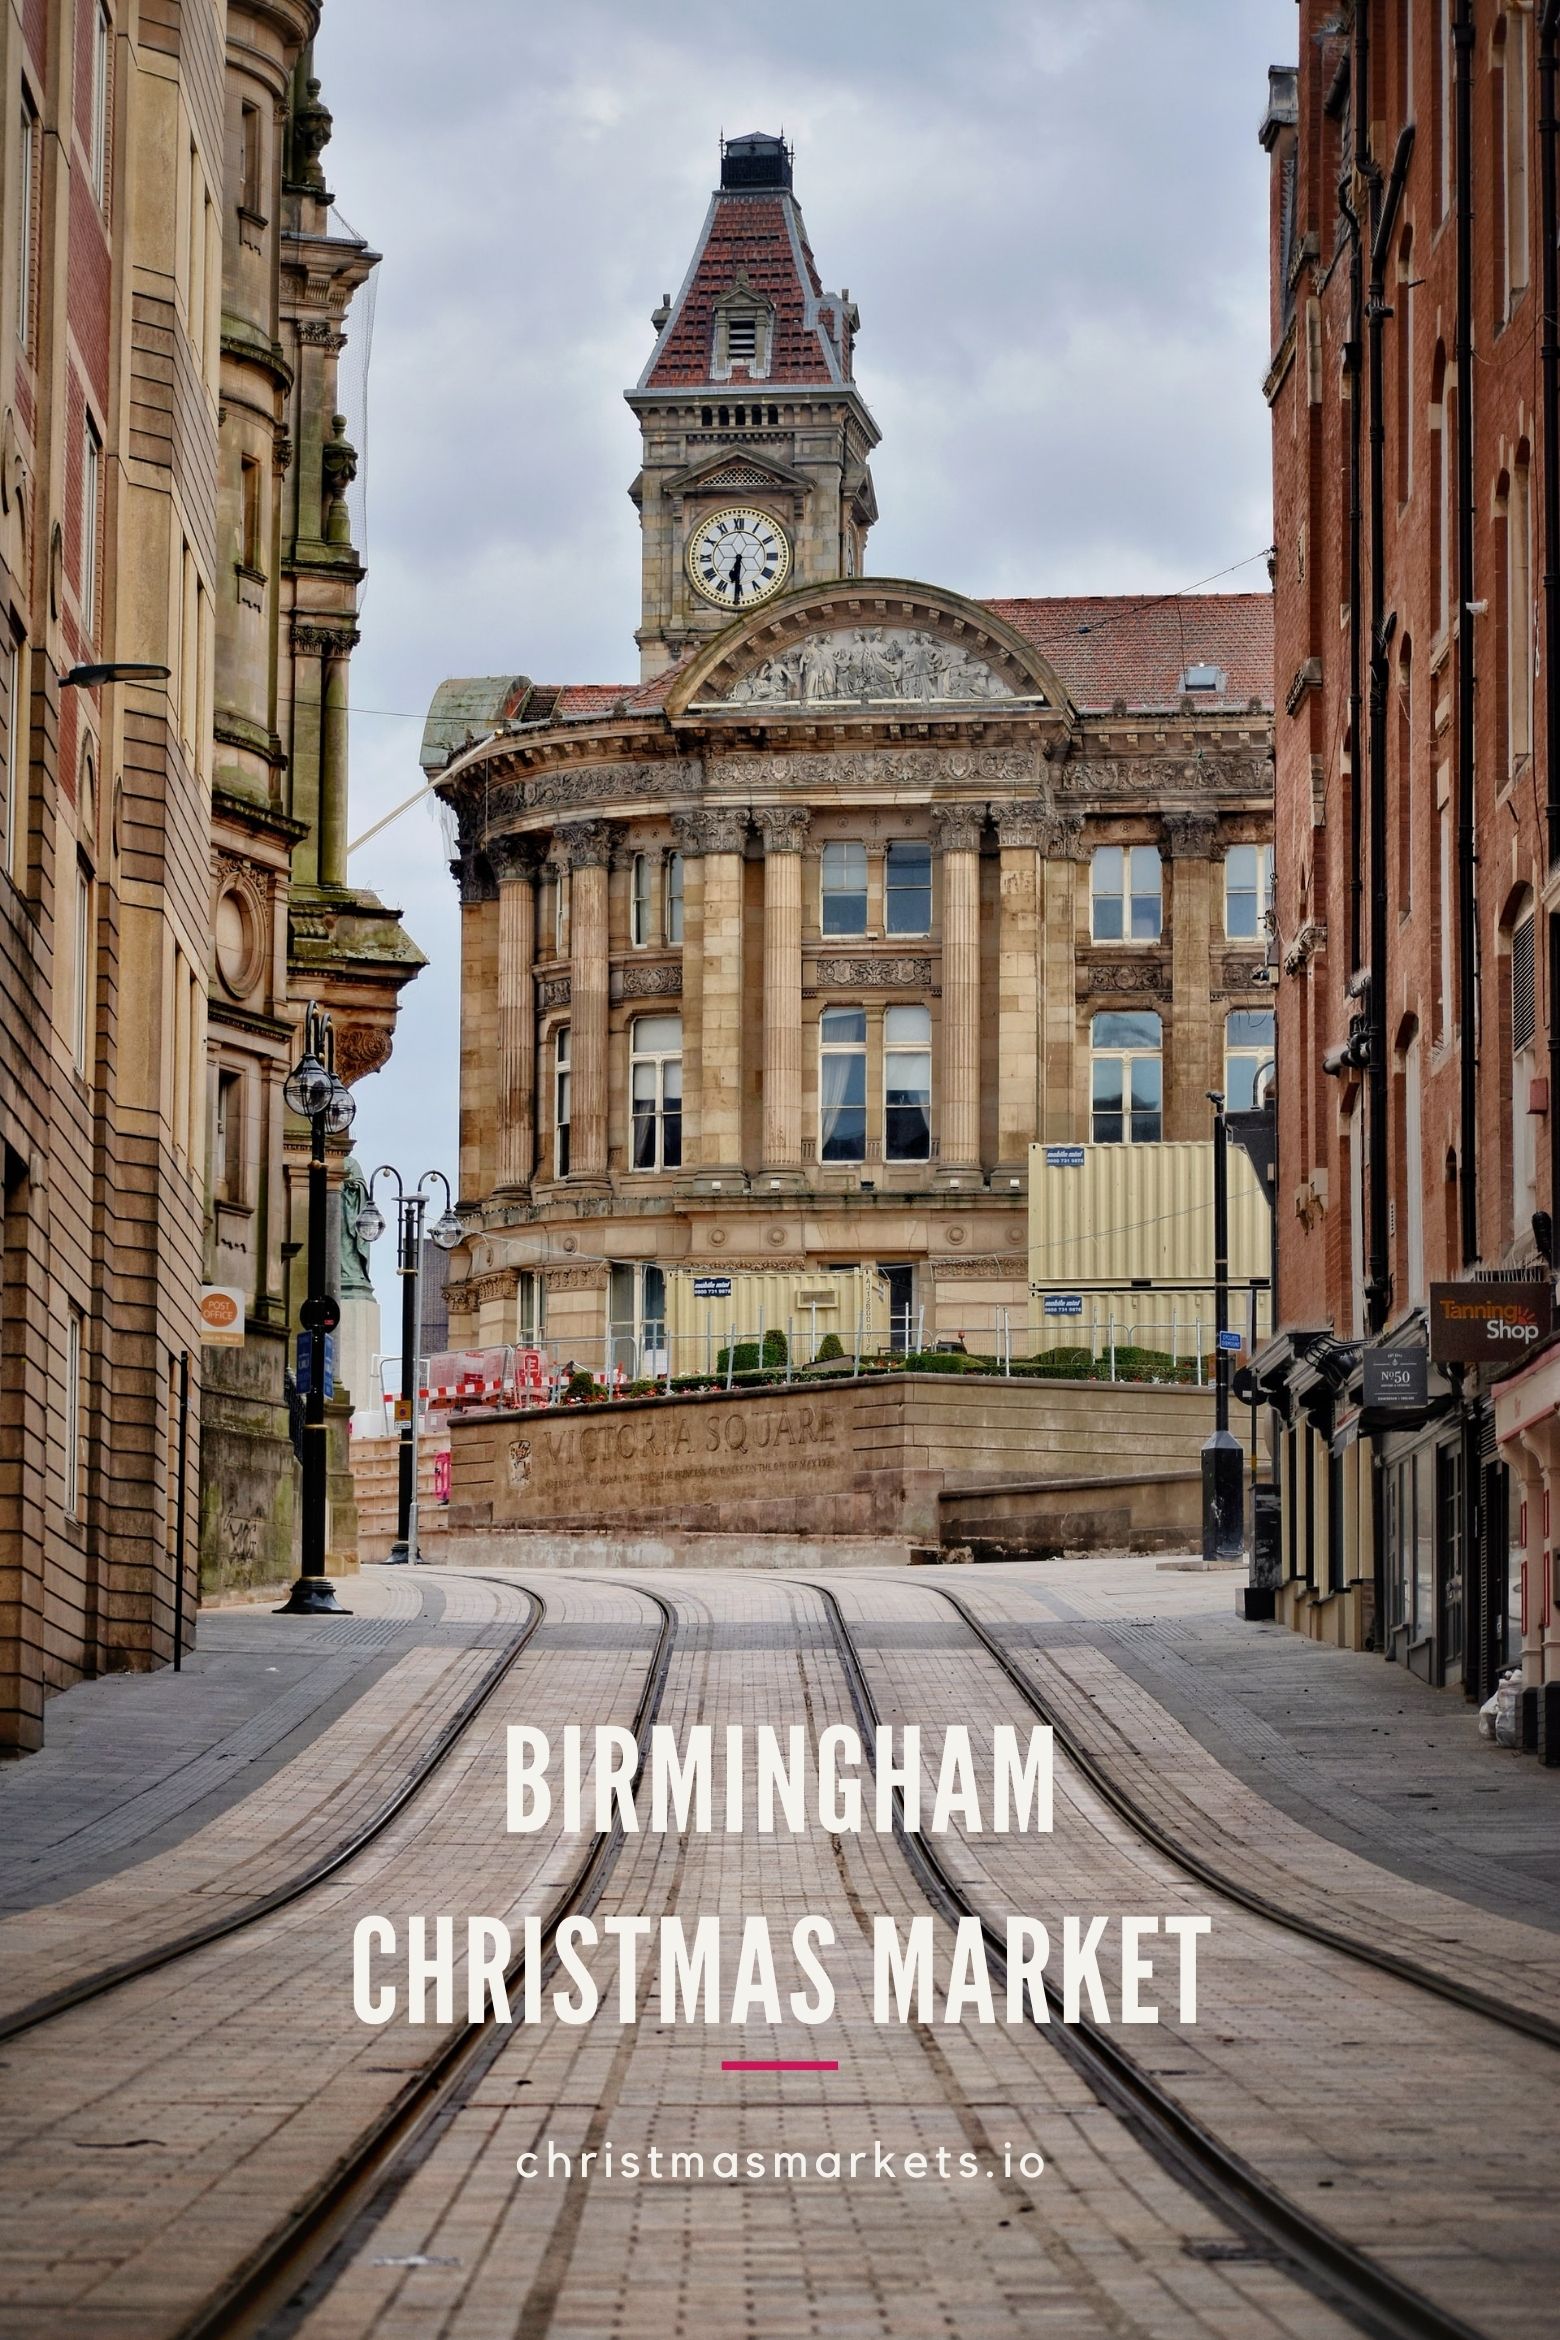 Birmingham Museum building and tram lines.